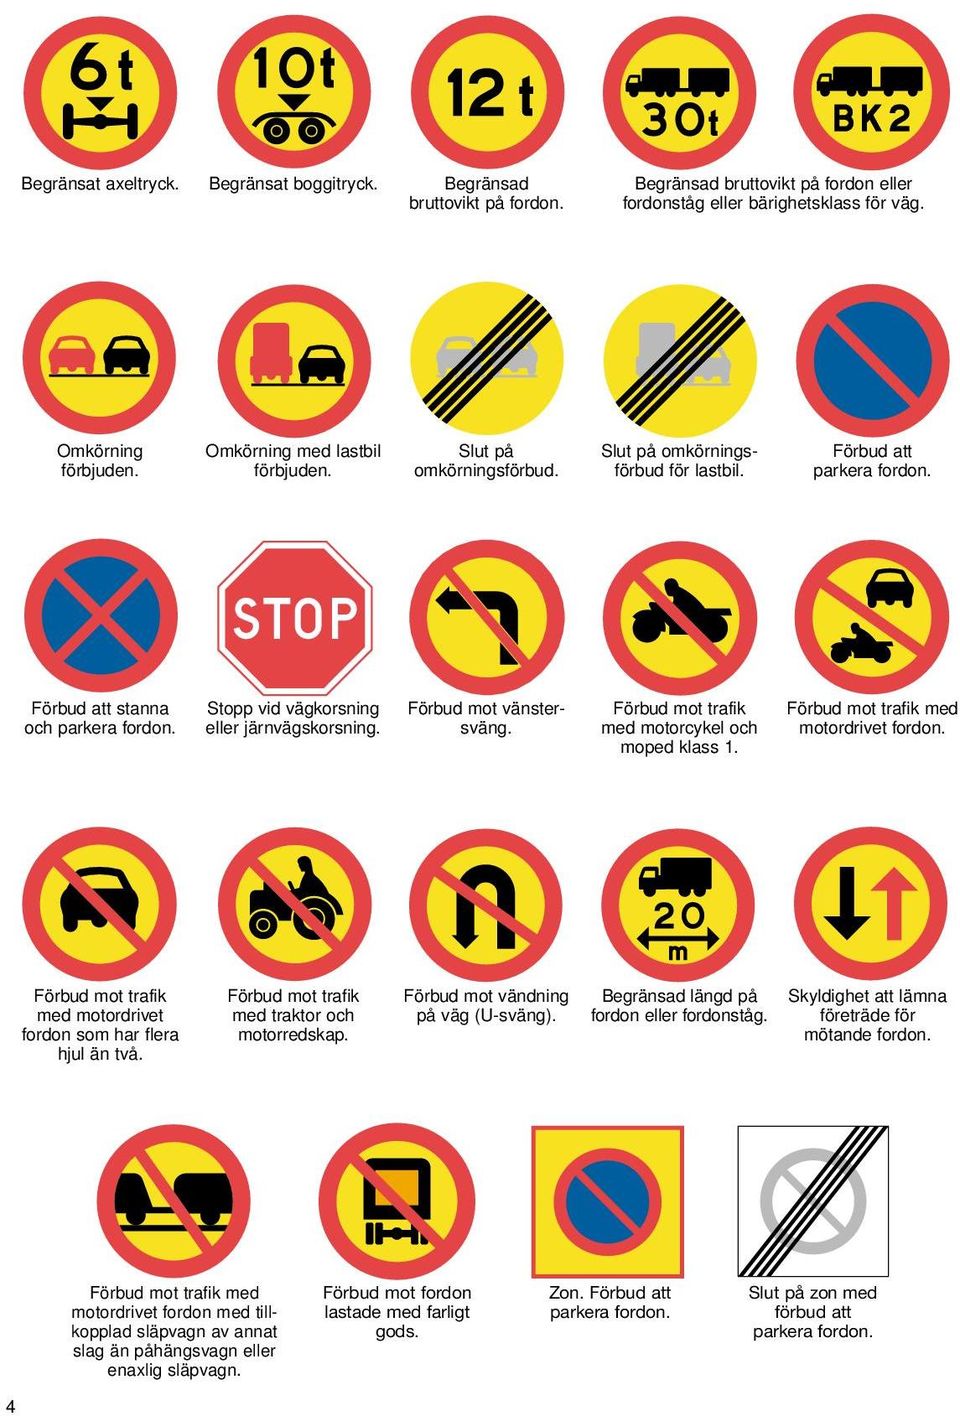 Stopp vid vägkorsning eller järnvägskorsning. Förbud mot vänstersväng. Förbud mot trafik med motorcykel och moped klass 1. Förbud mot trafik med motordrivet fordon.